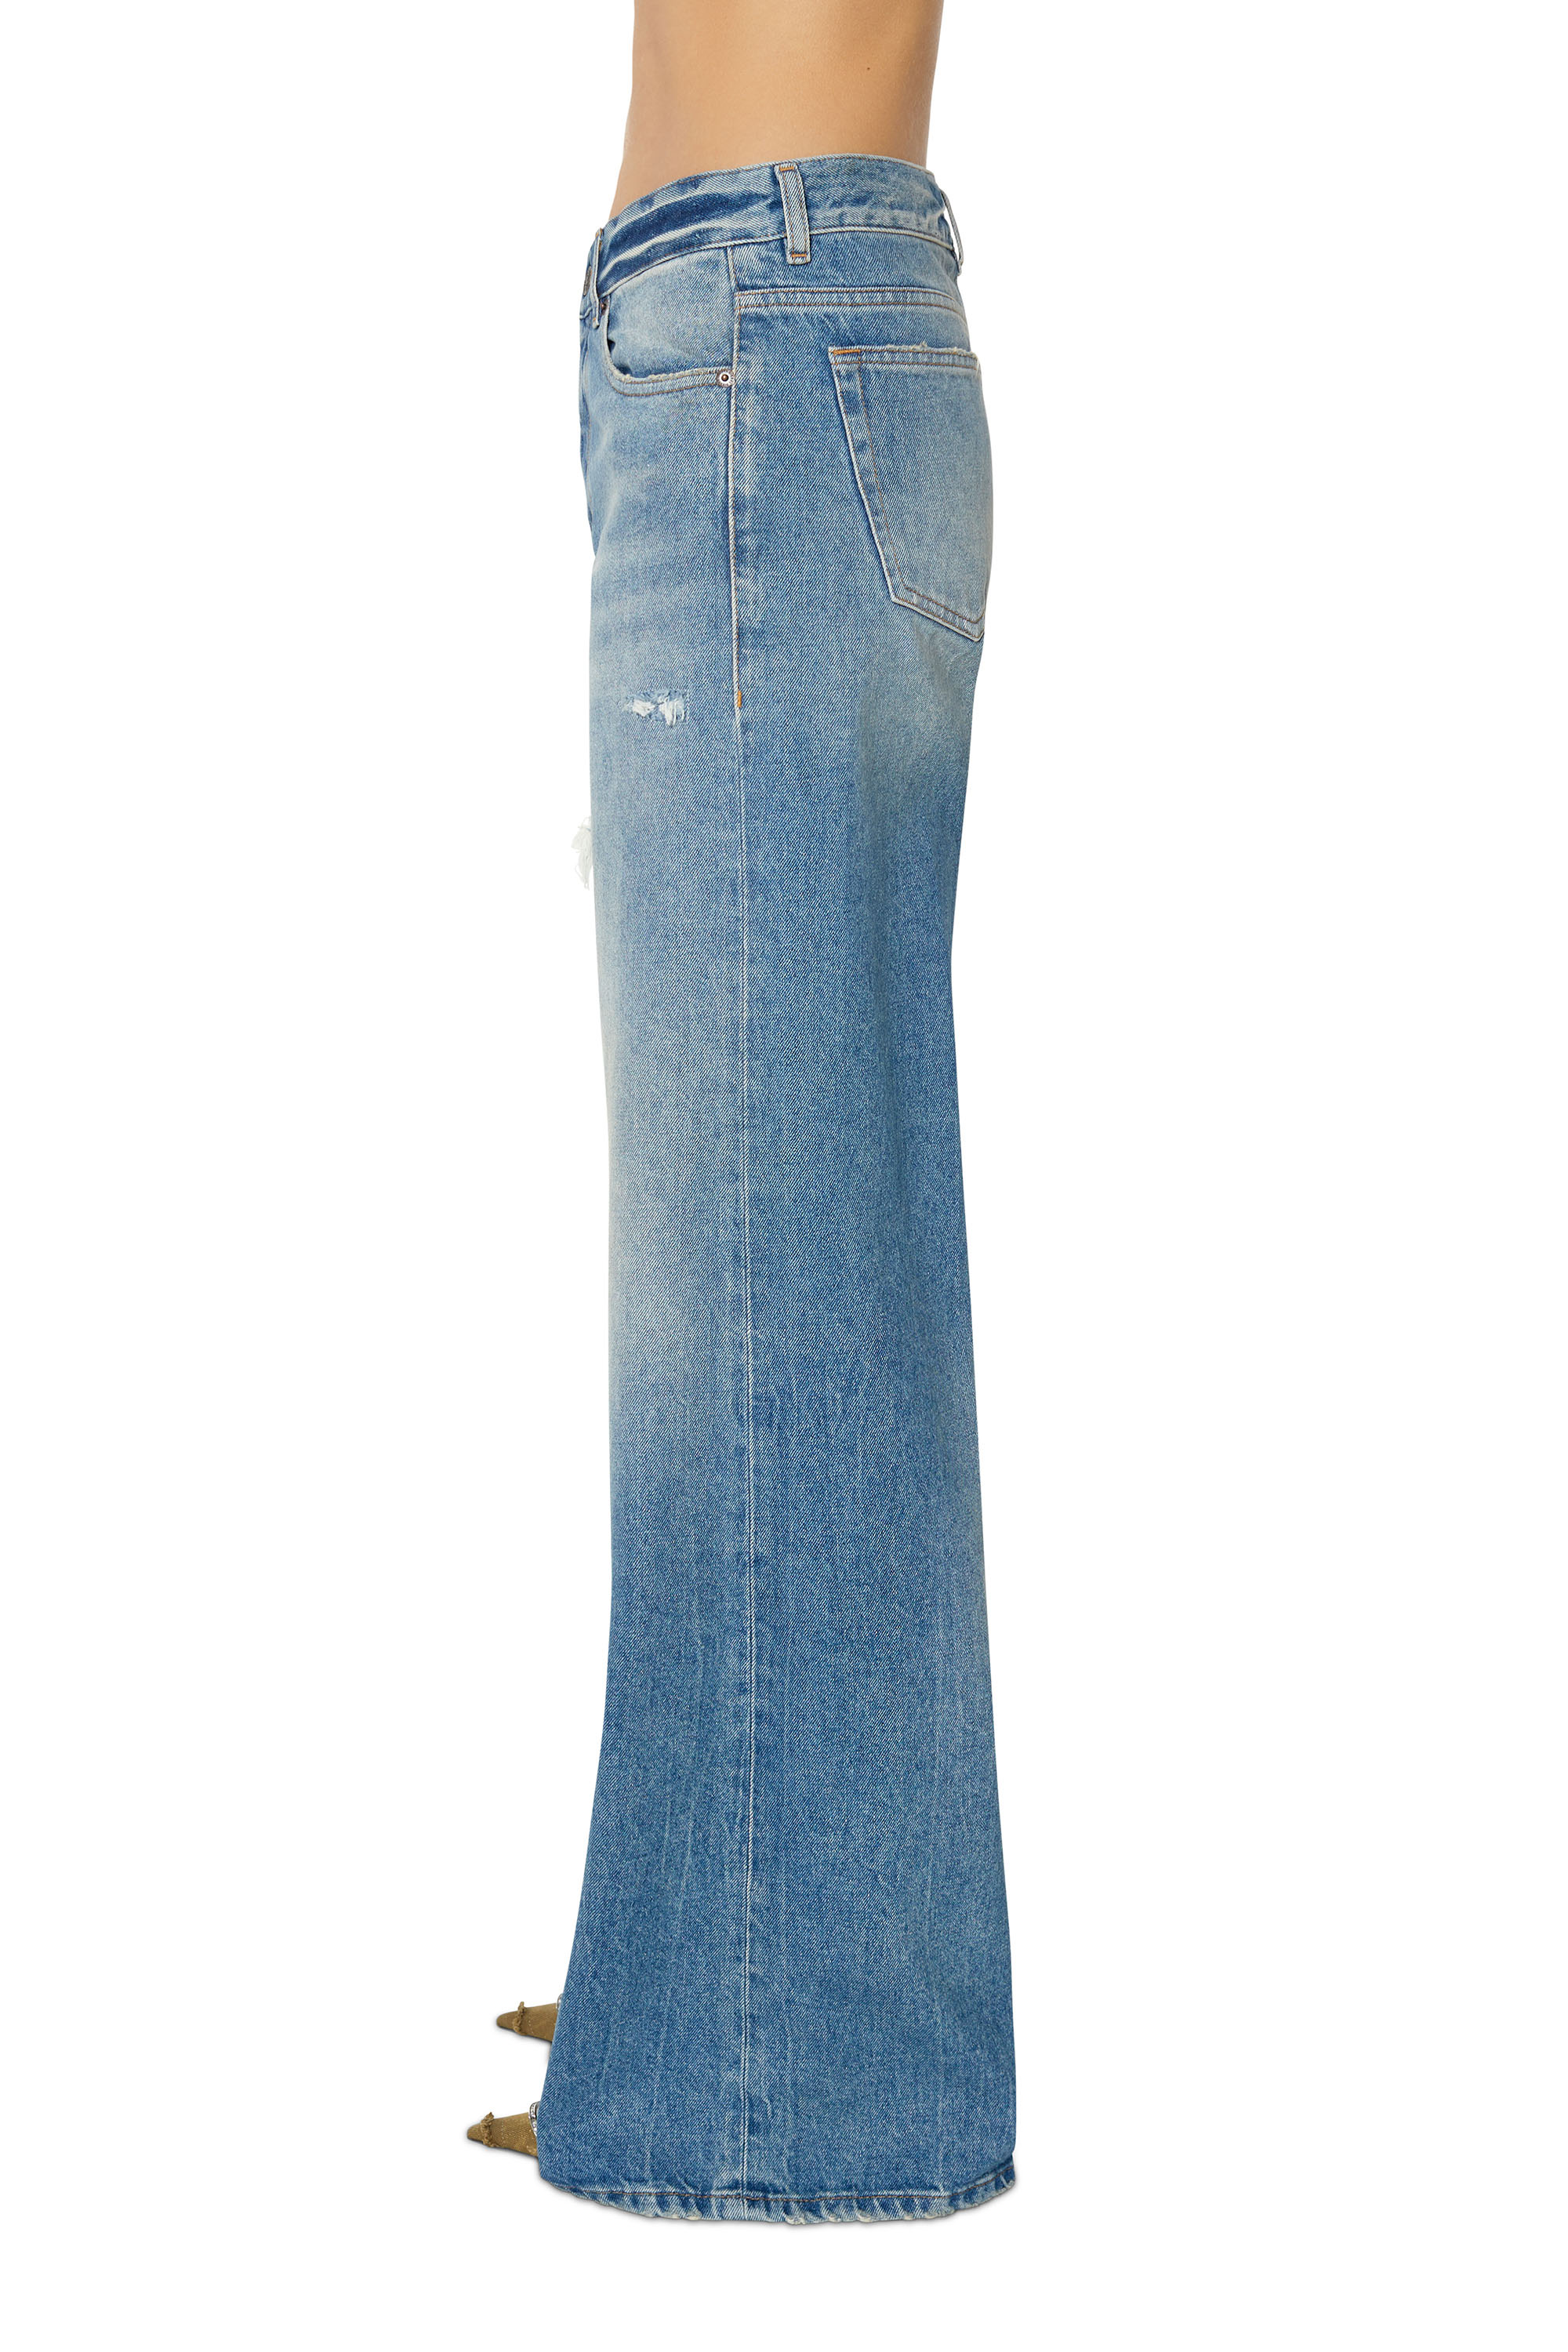 ブーツカットフレア Jeans - 1978 D-Akemi | ライトブルー 